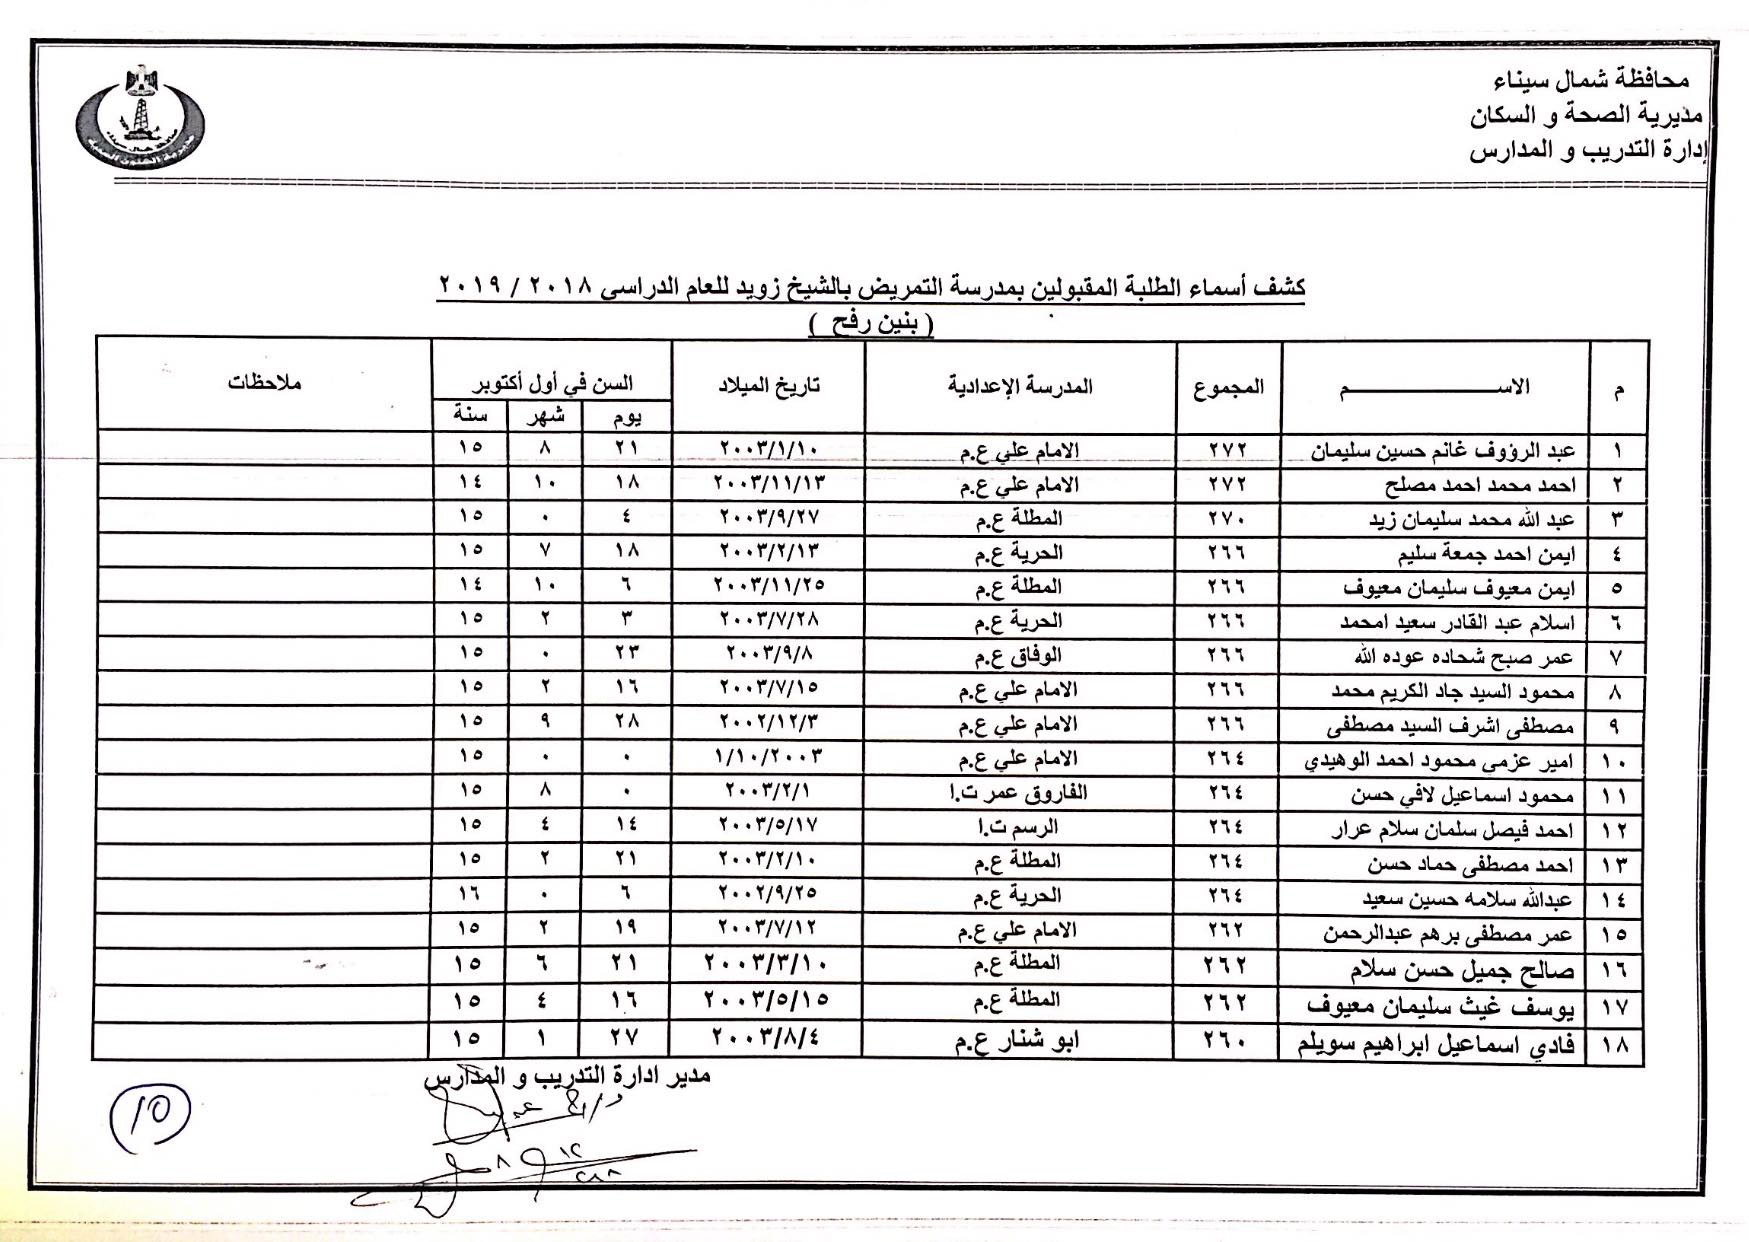 أسماء المقبولين بمدارس التمريض بشمال سيناء (10)